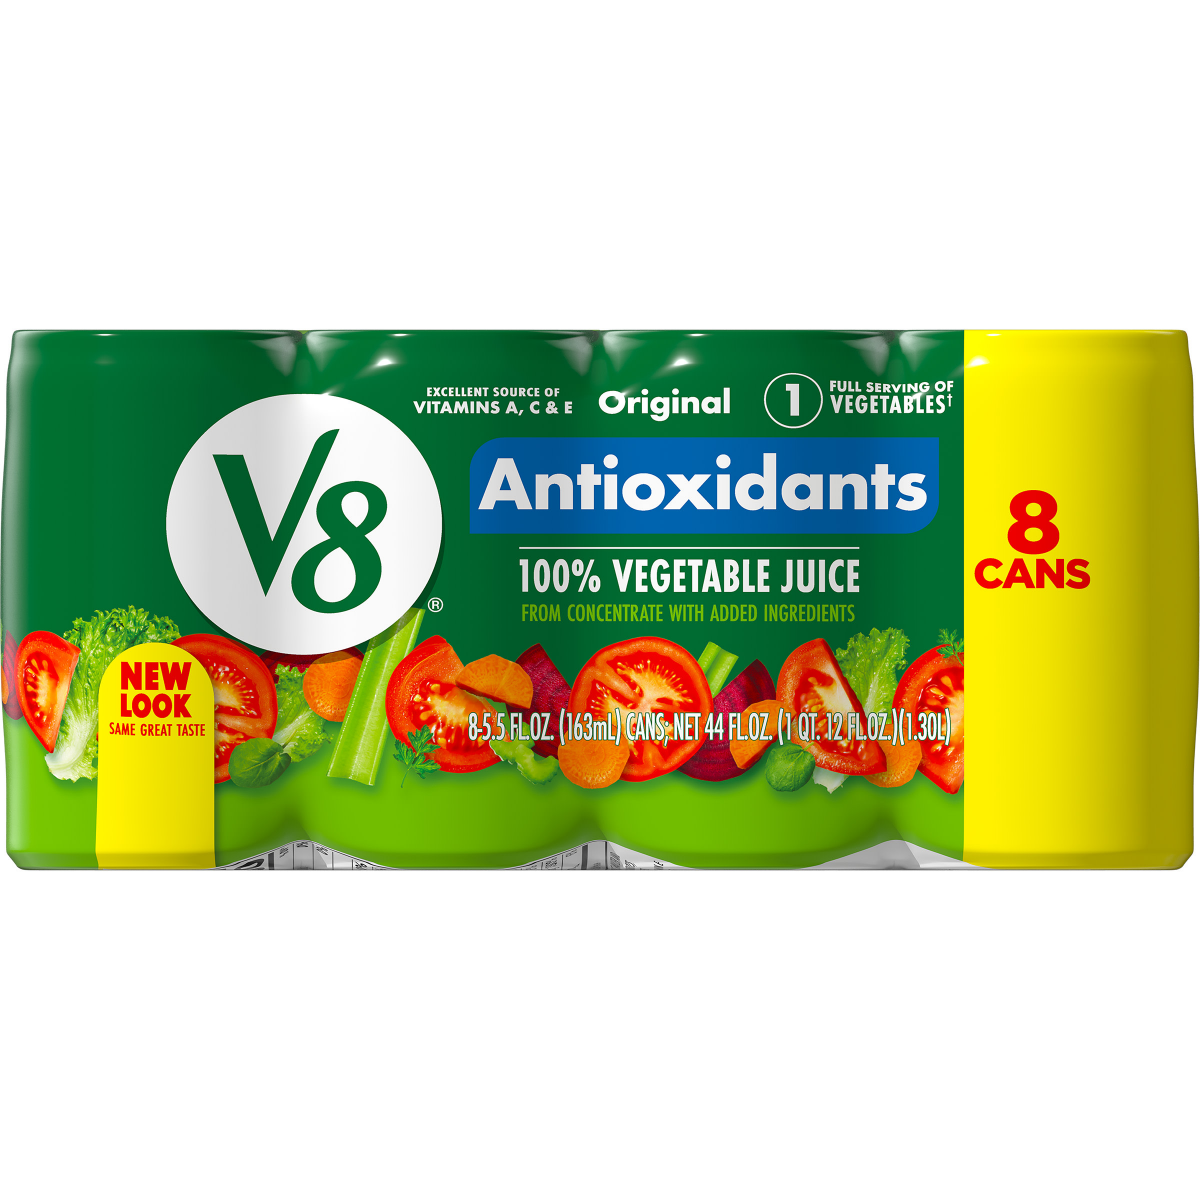 slide 13 of 29, V8 Original Essential Antioxidants 100% Vegetable Juice, 44 oz